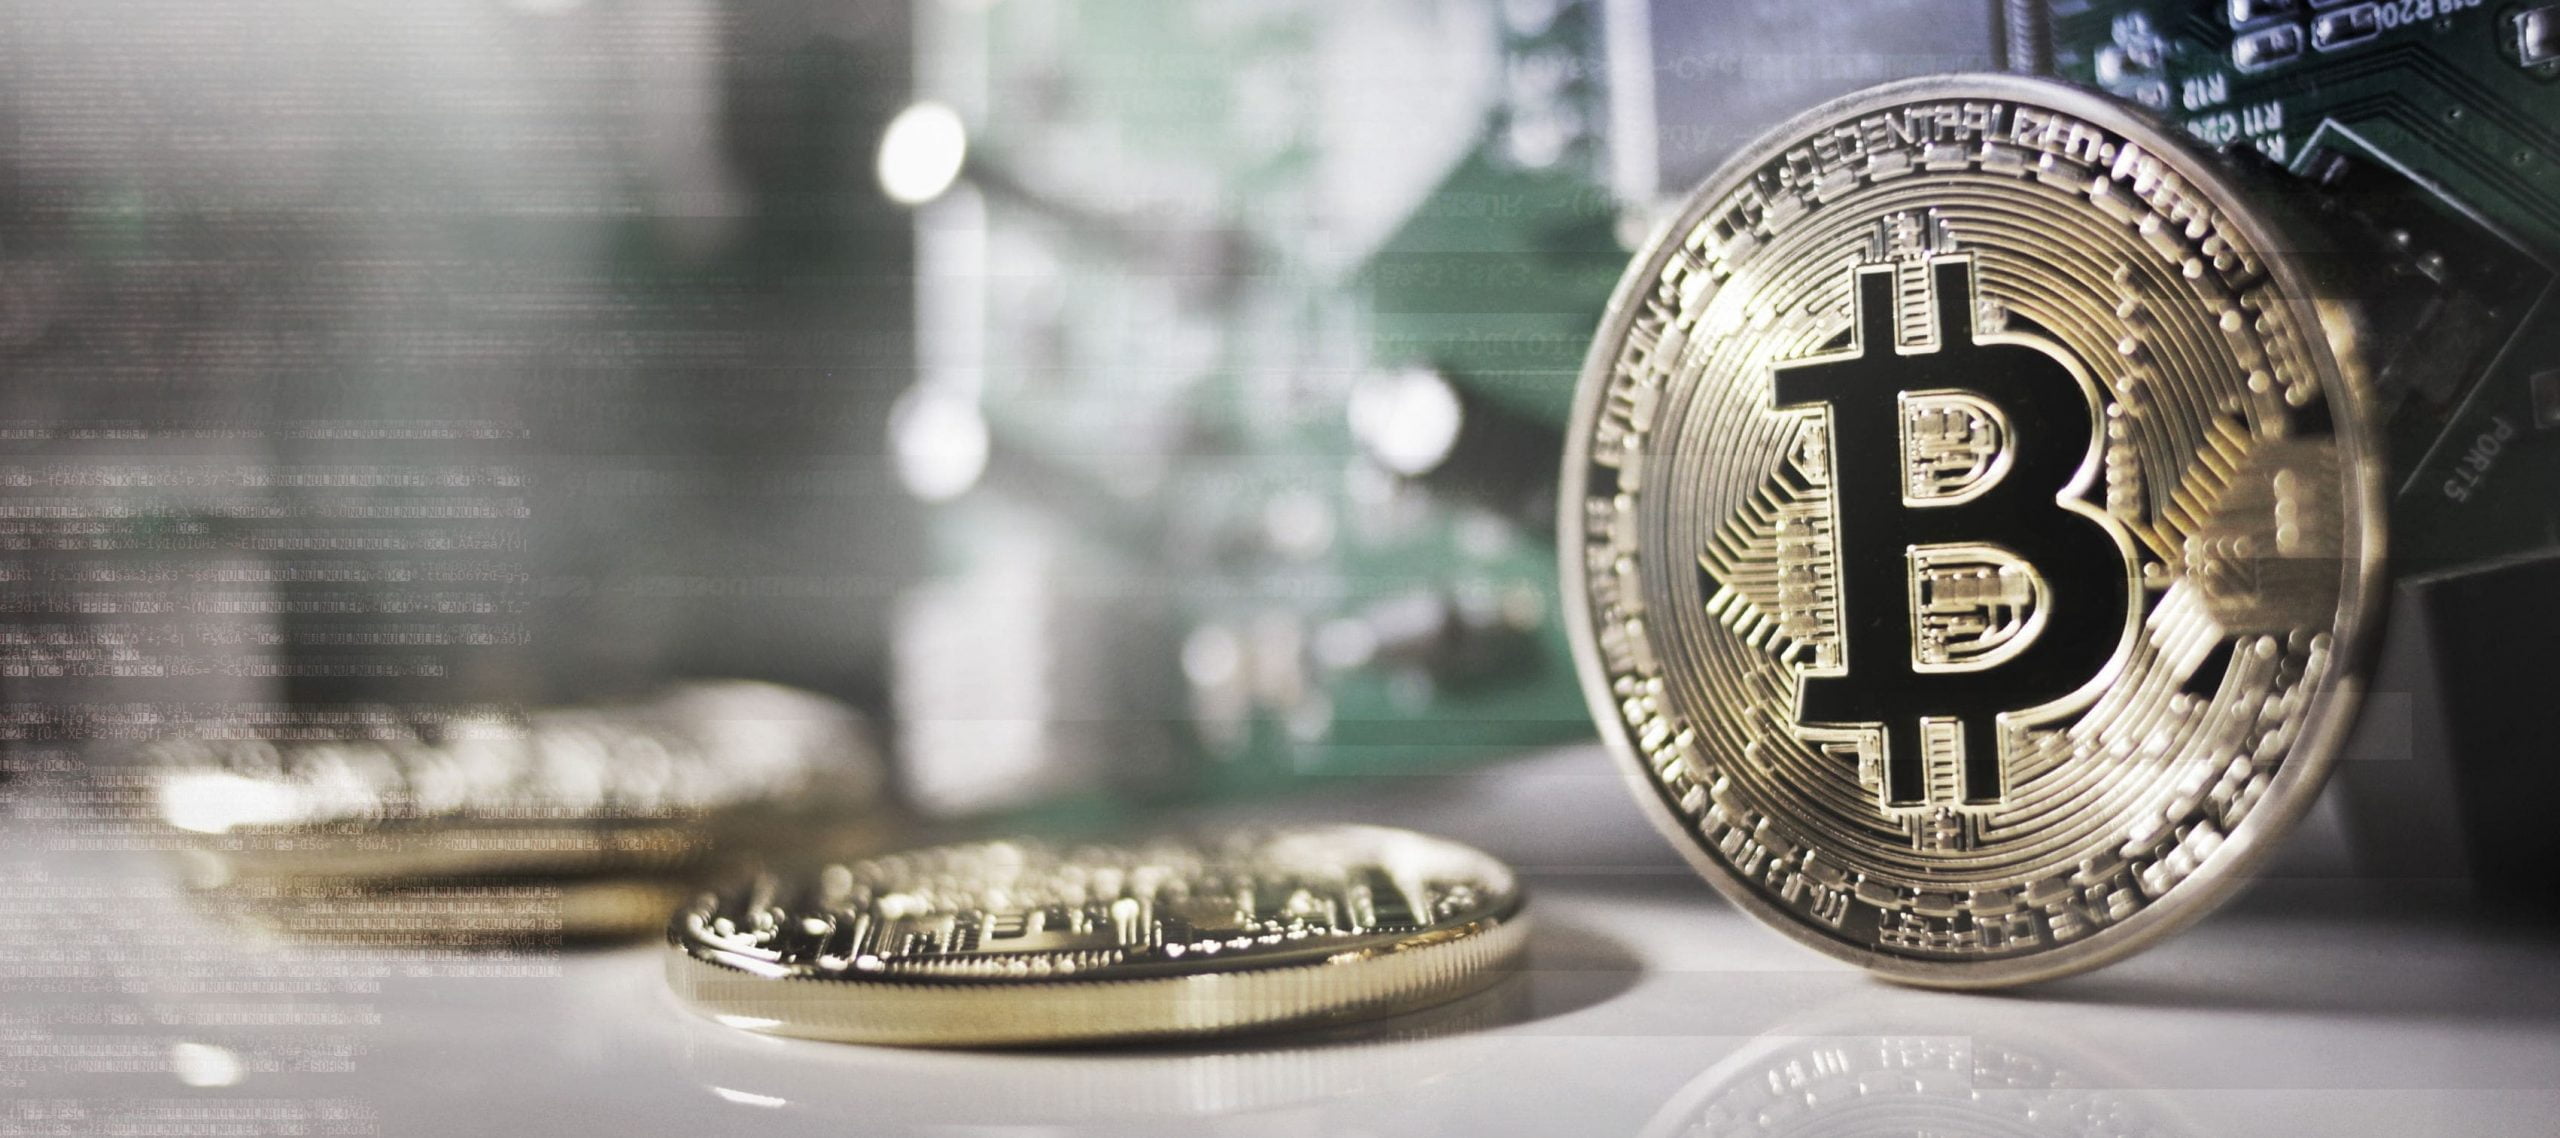 Bitcoins sobre una mesa en la que se habla de hacienda y las criptomonedas